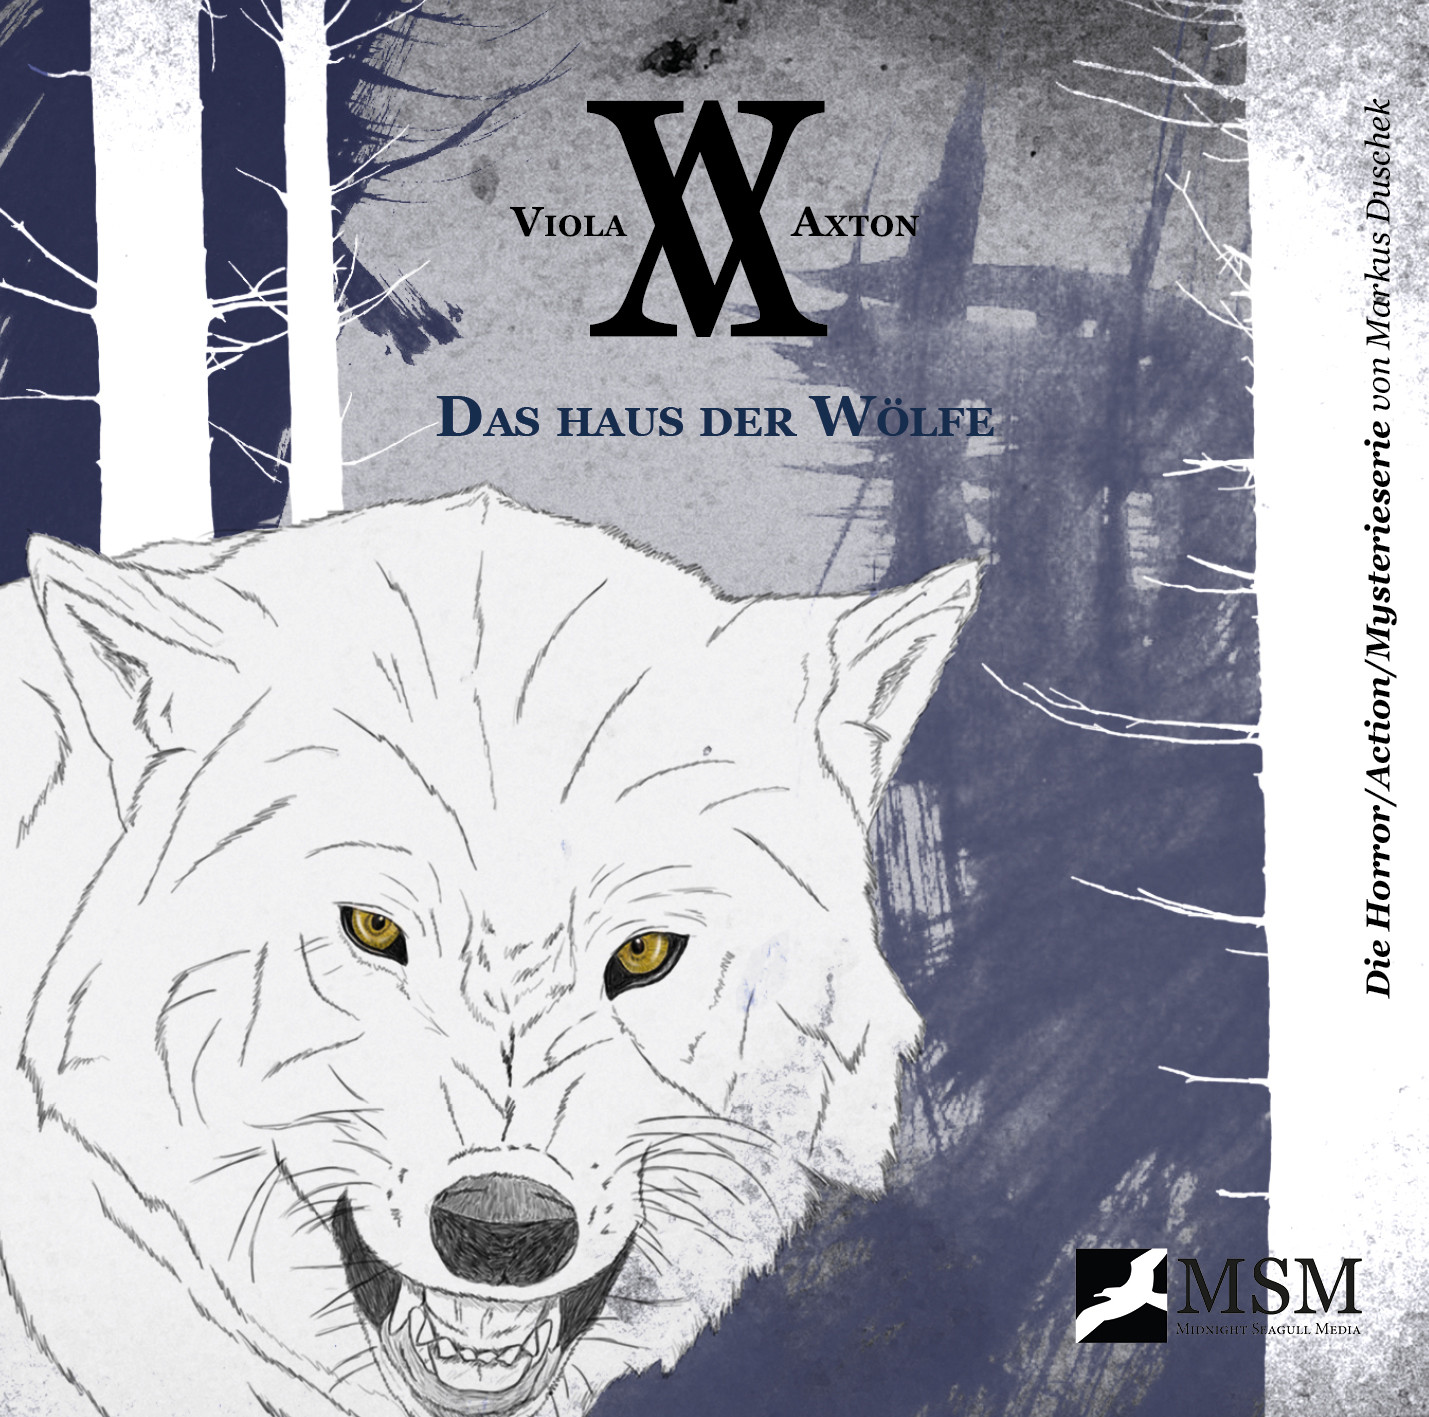 Viola Axton - Folge 4: Das Haus der Wölfe